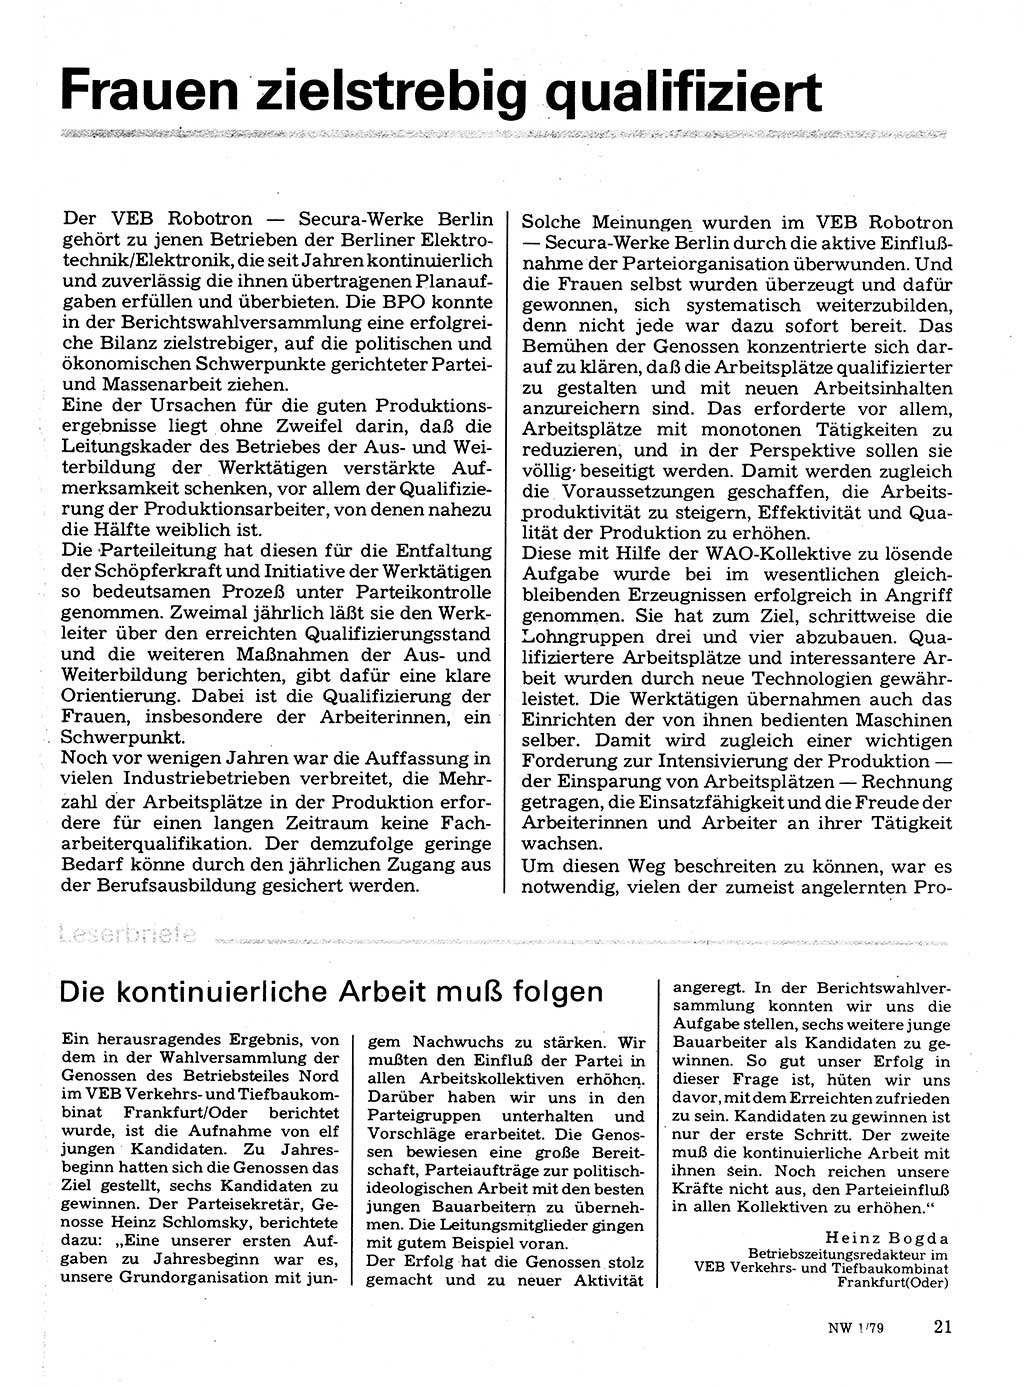 Neuer Weg (NW), Organ des Zentralkomitees (ZK) der SED (Sozialistische Einheitspartei Deutschlands) für Fragen des Parteilebens, 34. Jahrgang [Deutsche Demokratische Republik (DDR)] 1979, Seite 21 (NW ZK SED DDR 1979, S. 21)